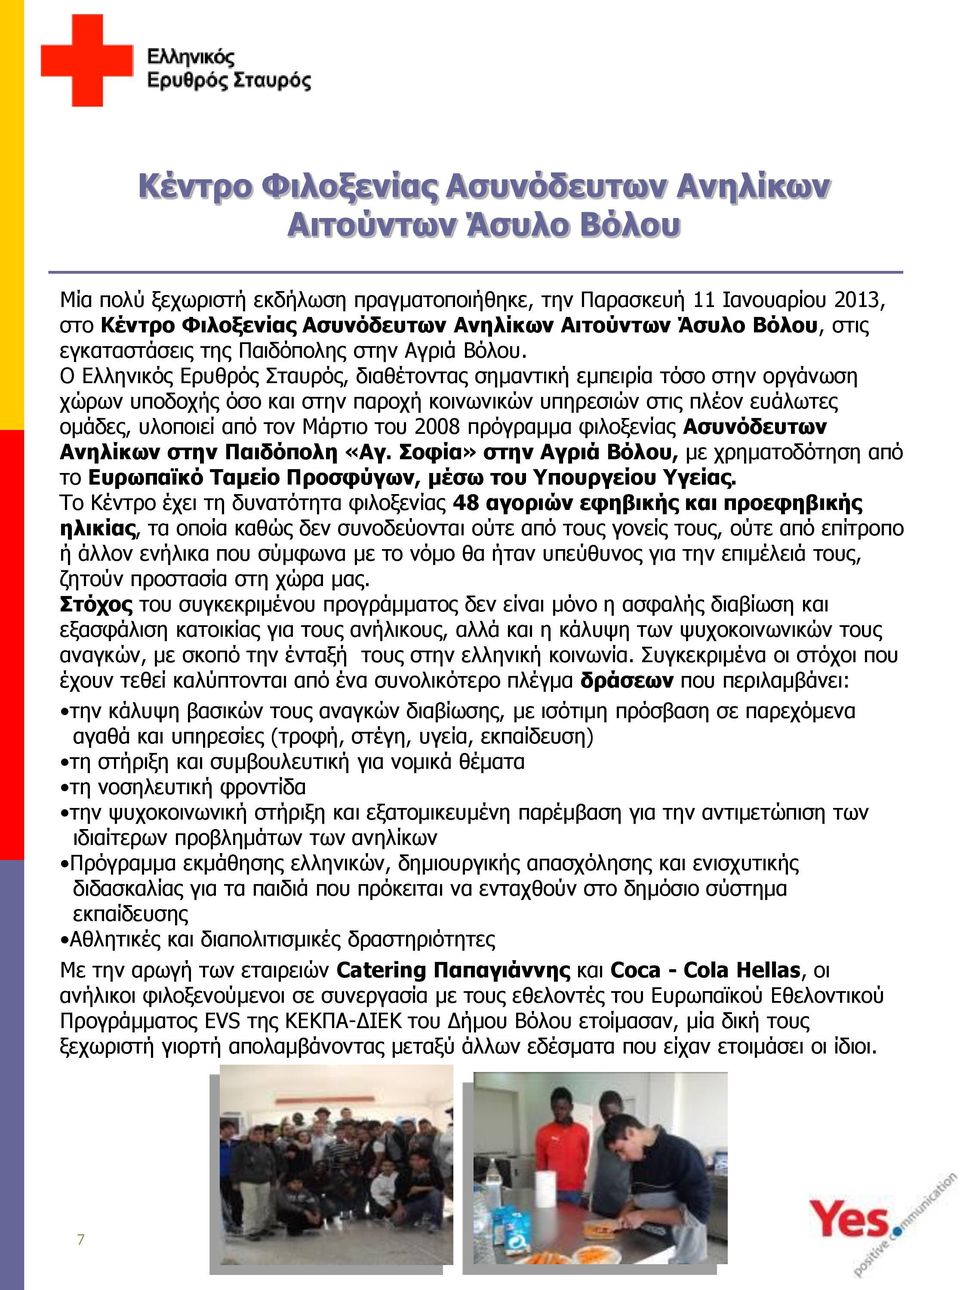 Ο Ελληνικός Ερυθρός Σταυρός, διαθέτοντας σημαντική εμπειρία τόσο στην οργάνωση χώρων υποδοχής όσο και στην παροχή κοινωνικών υπηρεσιών στις πλέον ευάλωτες ομάδες, υλοποιεί από τον Μάρτιο του 2008